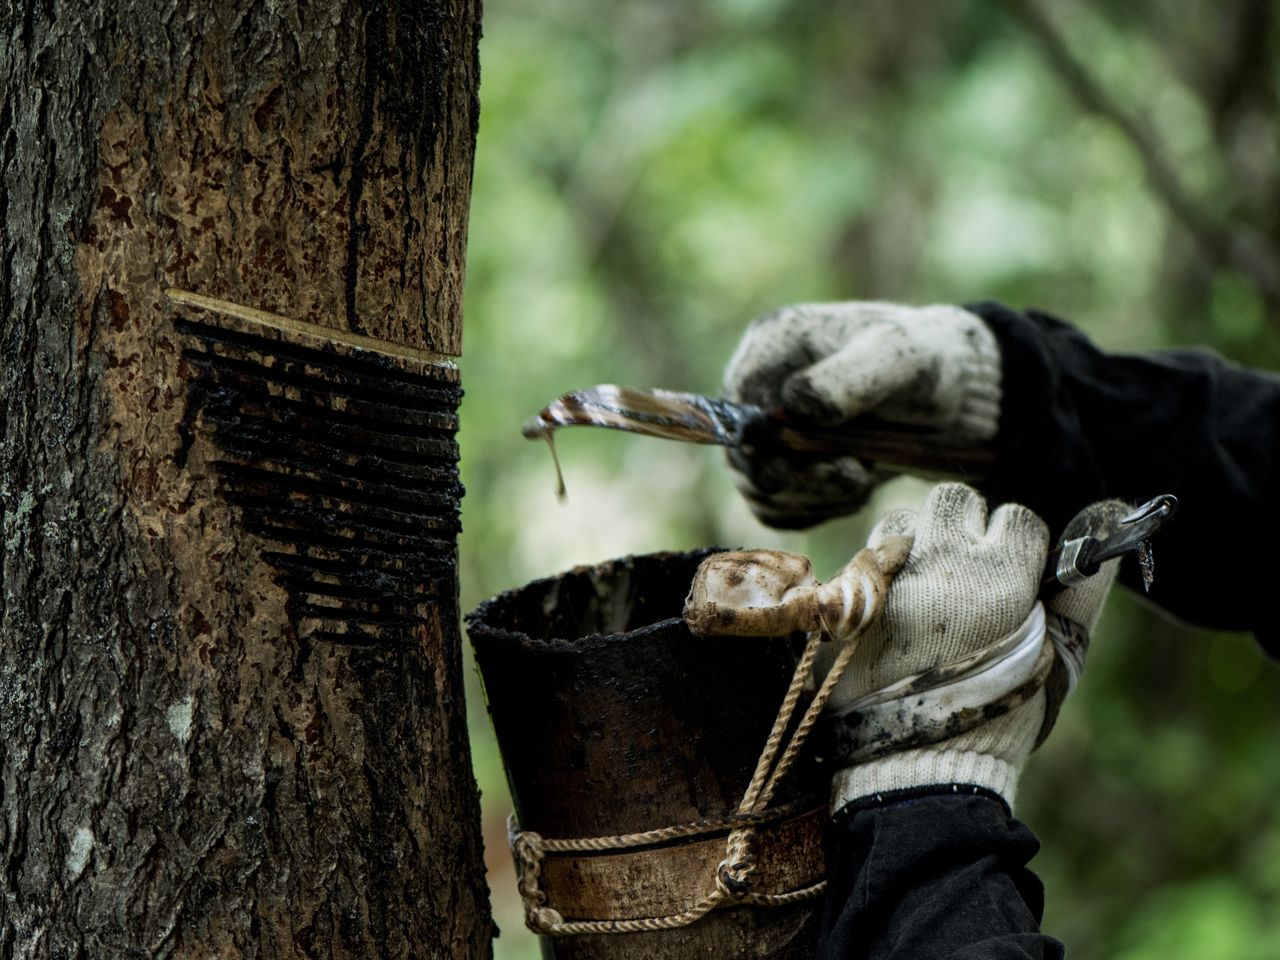 Reunir la savia de los troncos de los árboles es una parte de la producción y el refinado de la laca japonesa urushi. (© Jiji; Asociación Japonesa para la Preservación del Urushikaki)